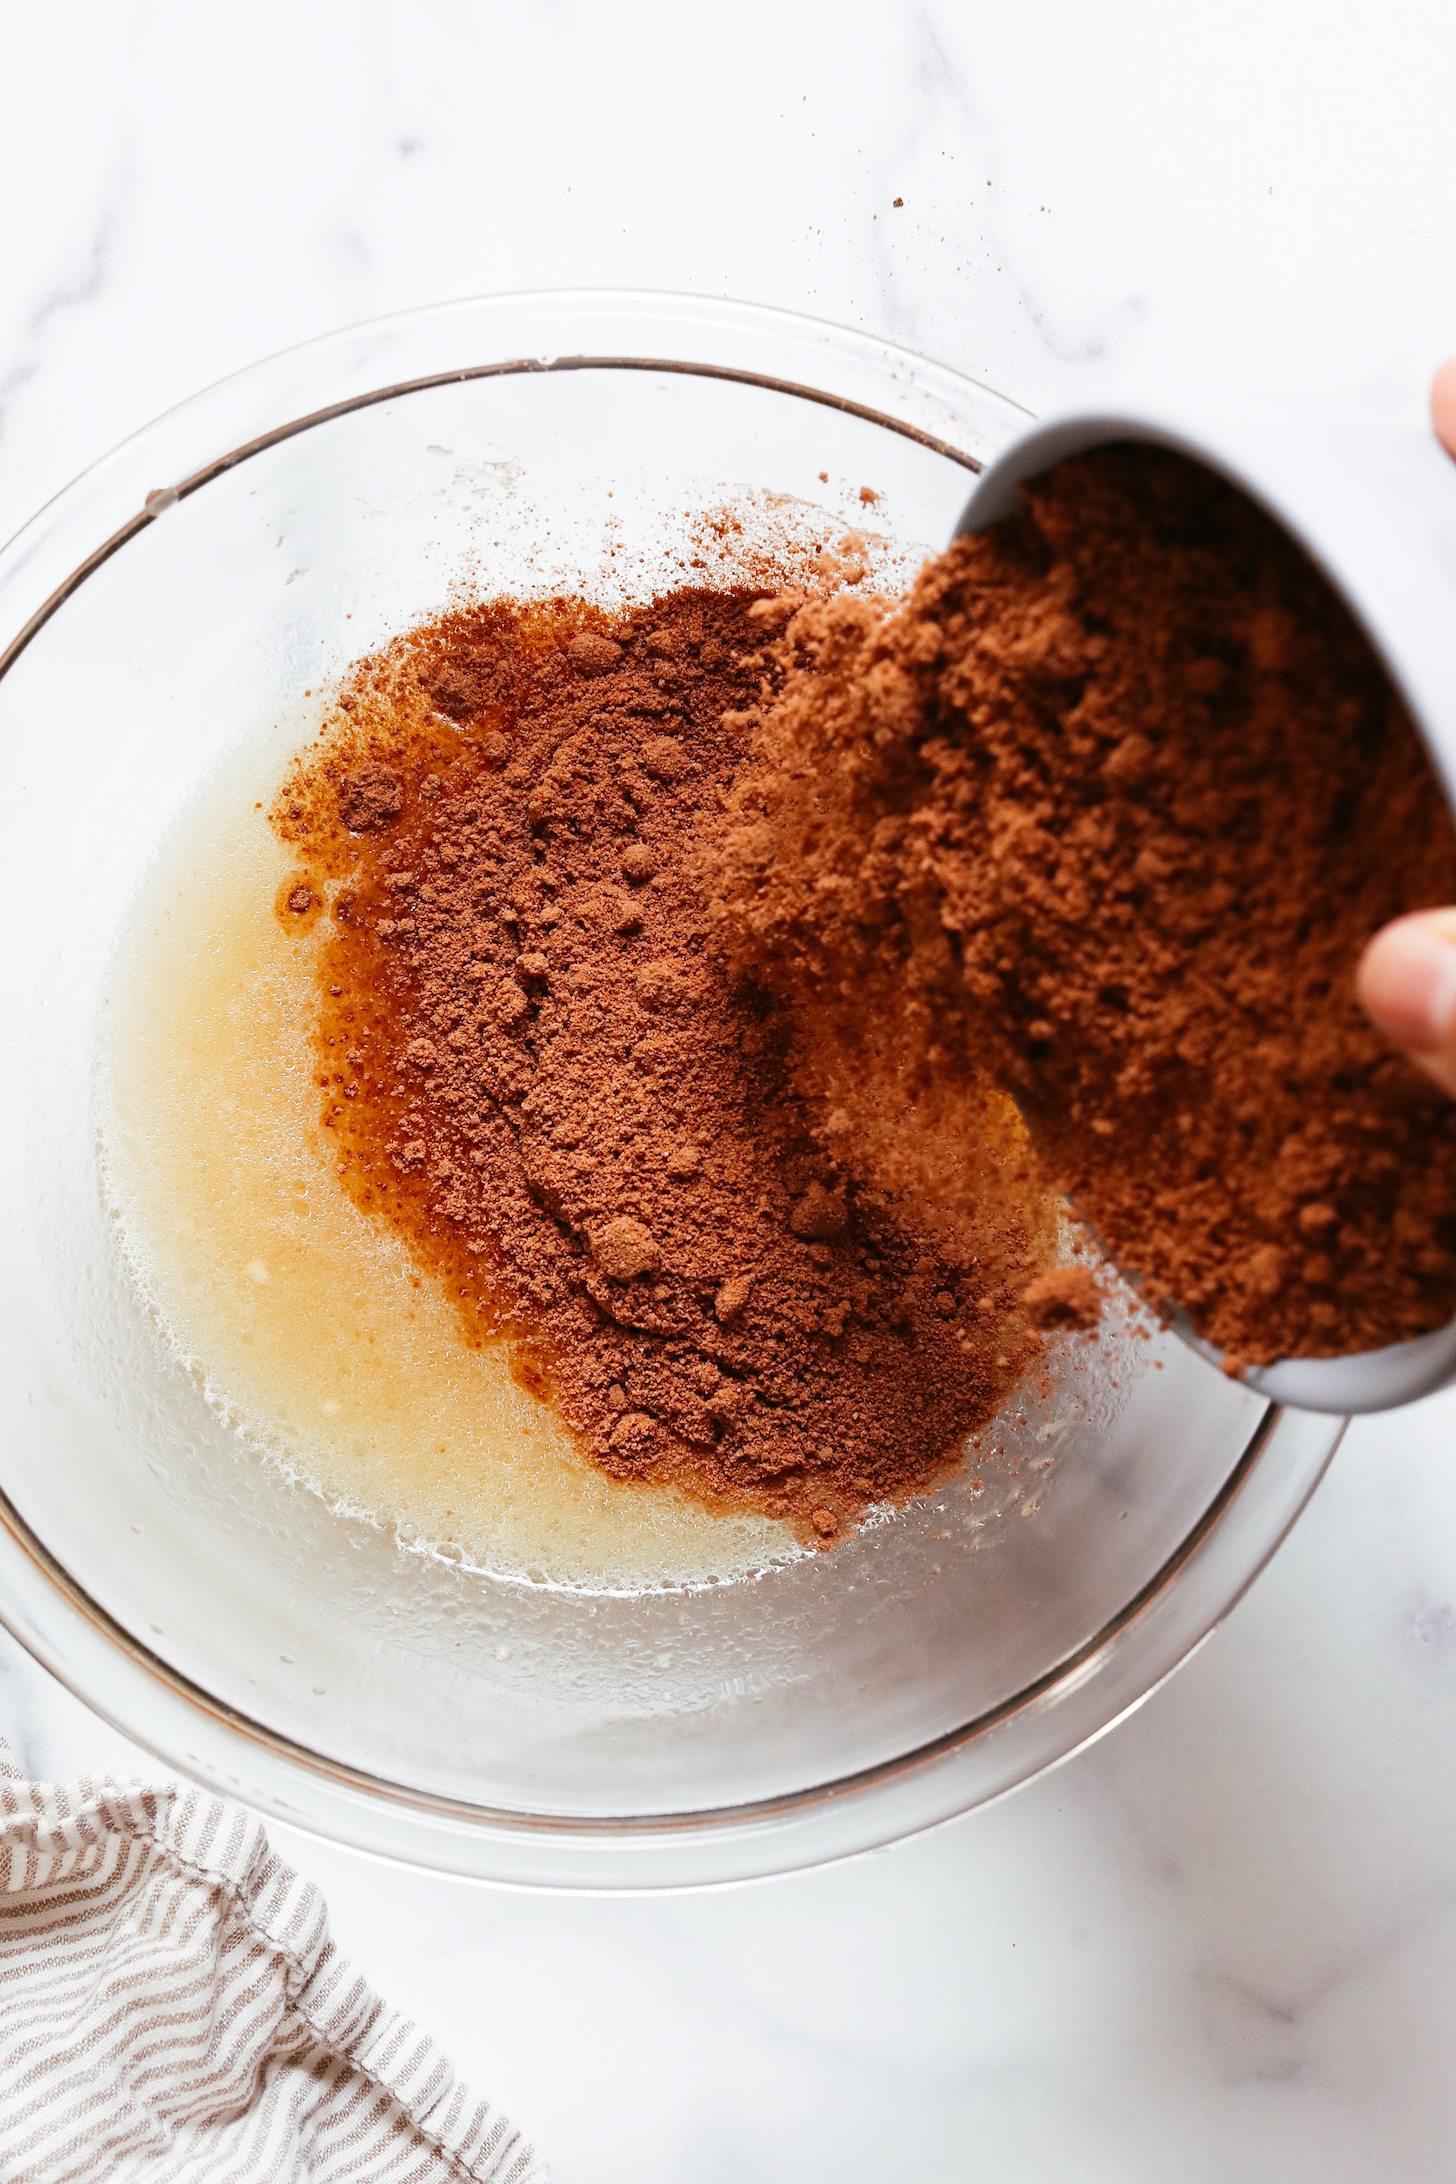 Verter la mezcla de pastel de chocolate en los ingredientes húmedos